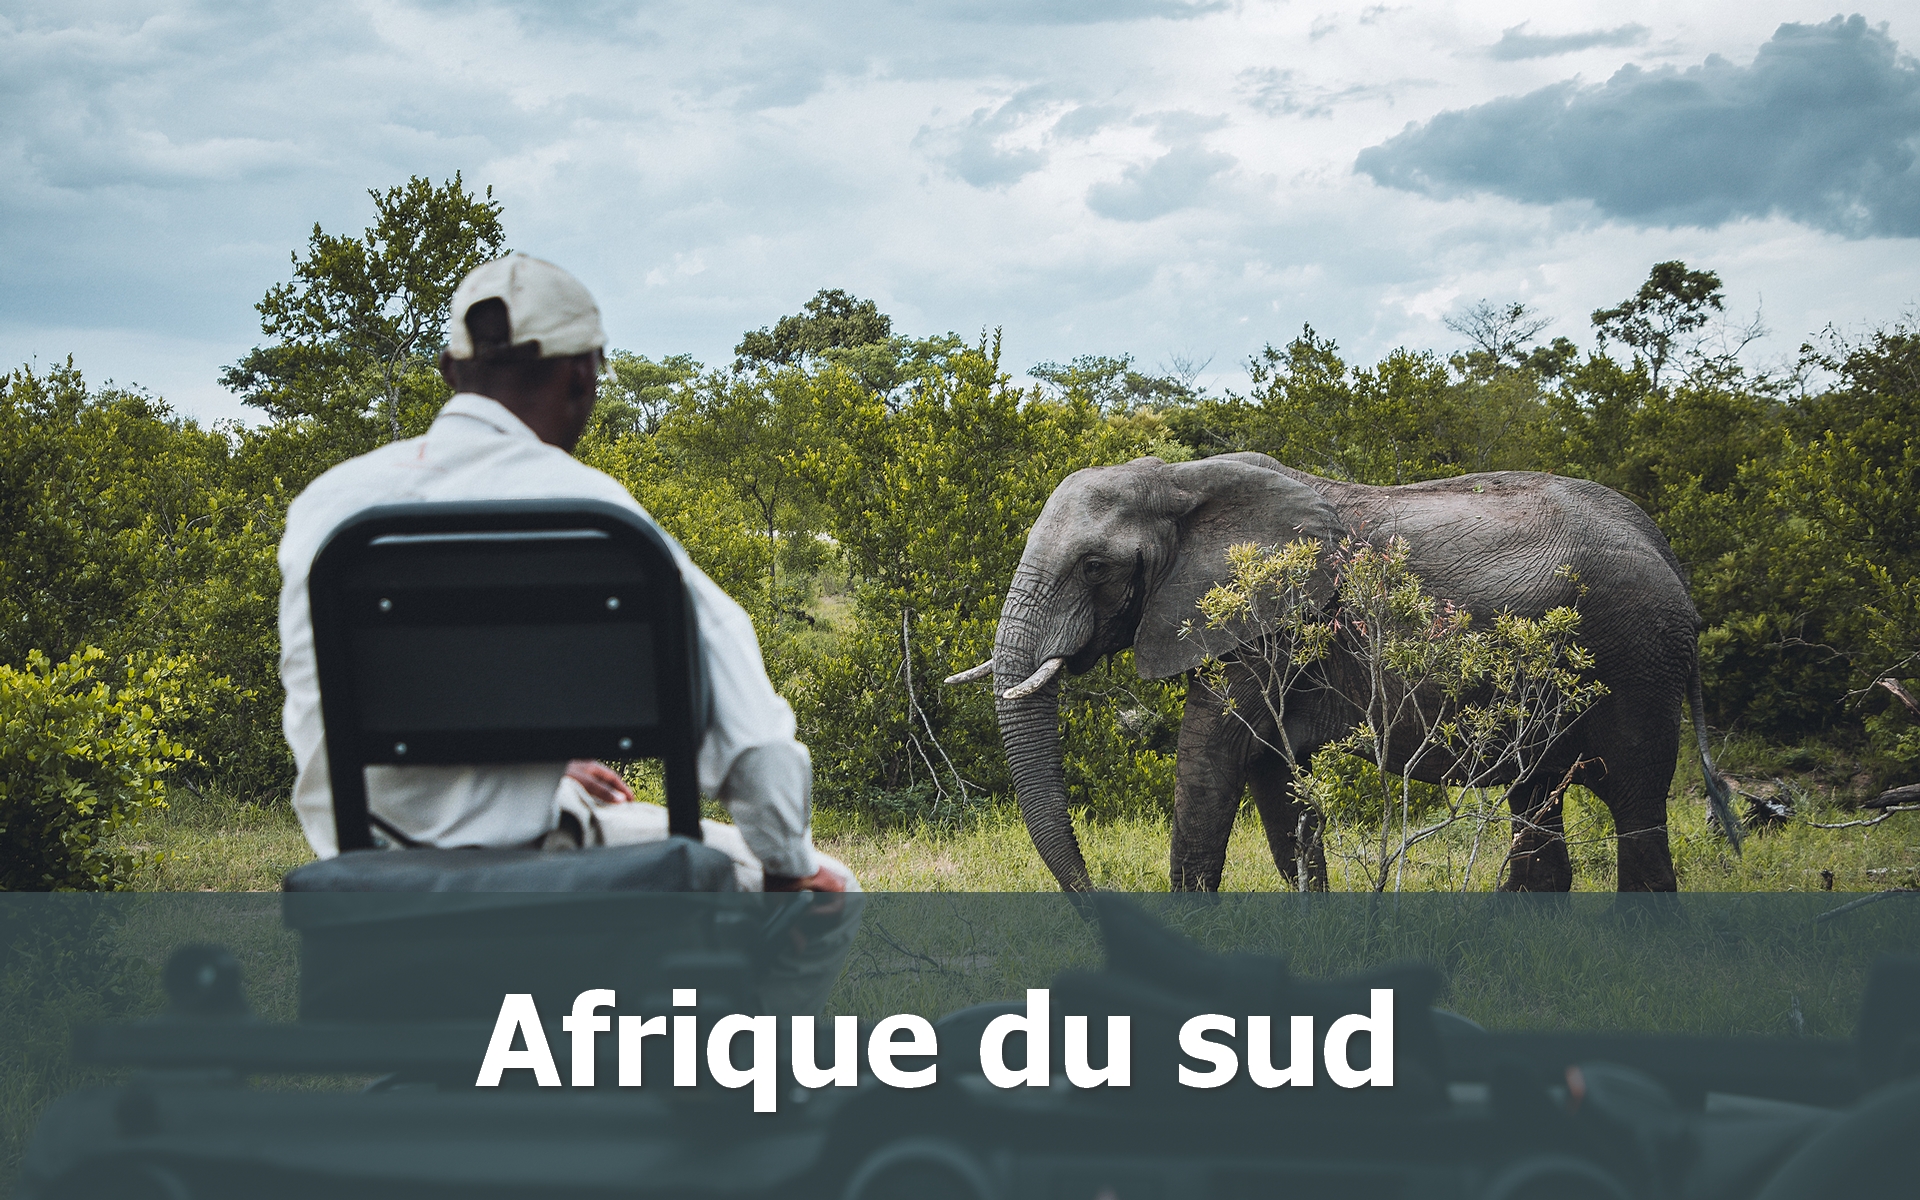 Voyage en Adrique du sud sur-mesure safari